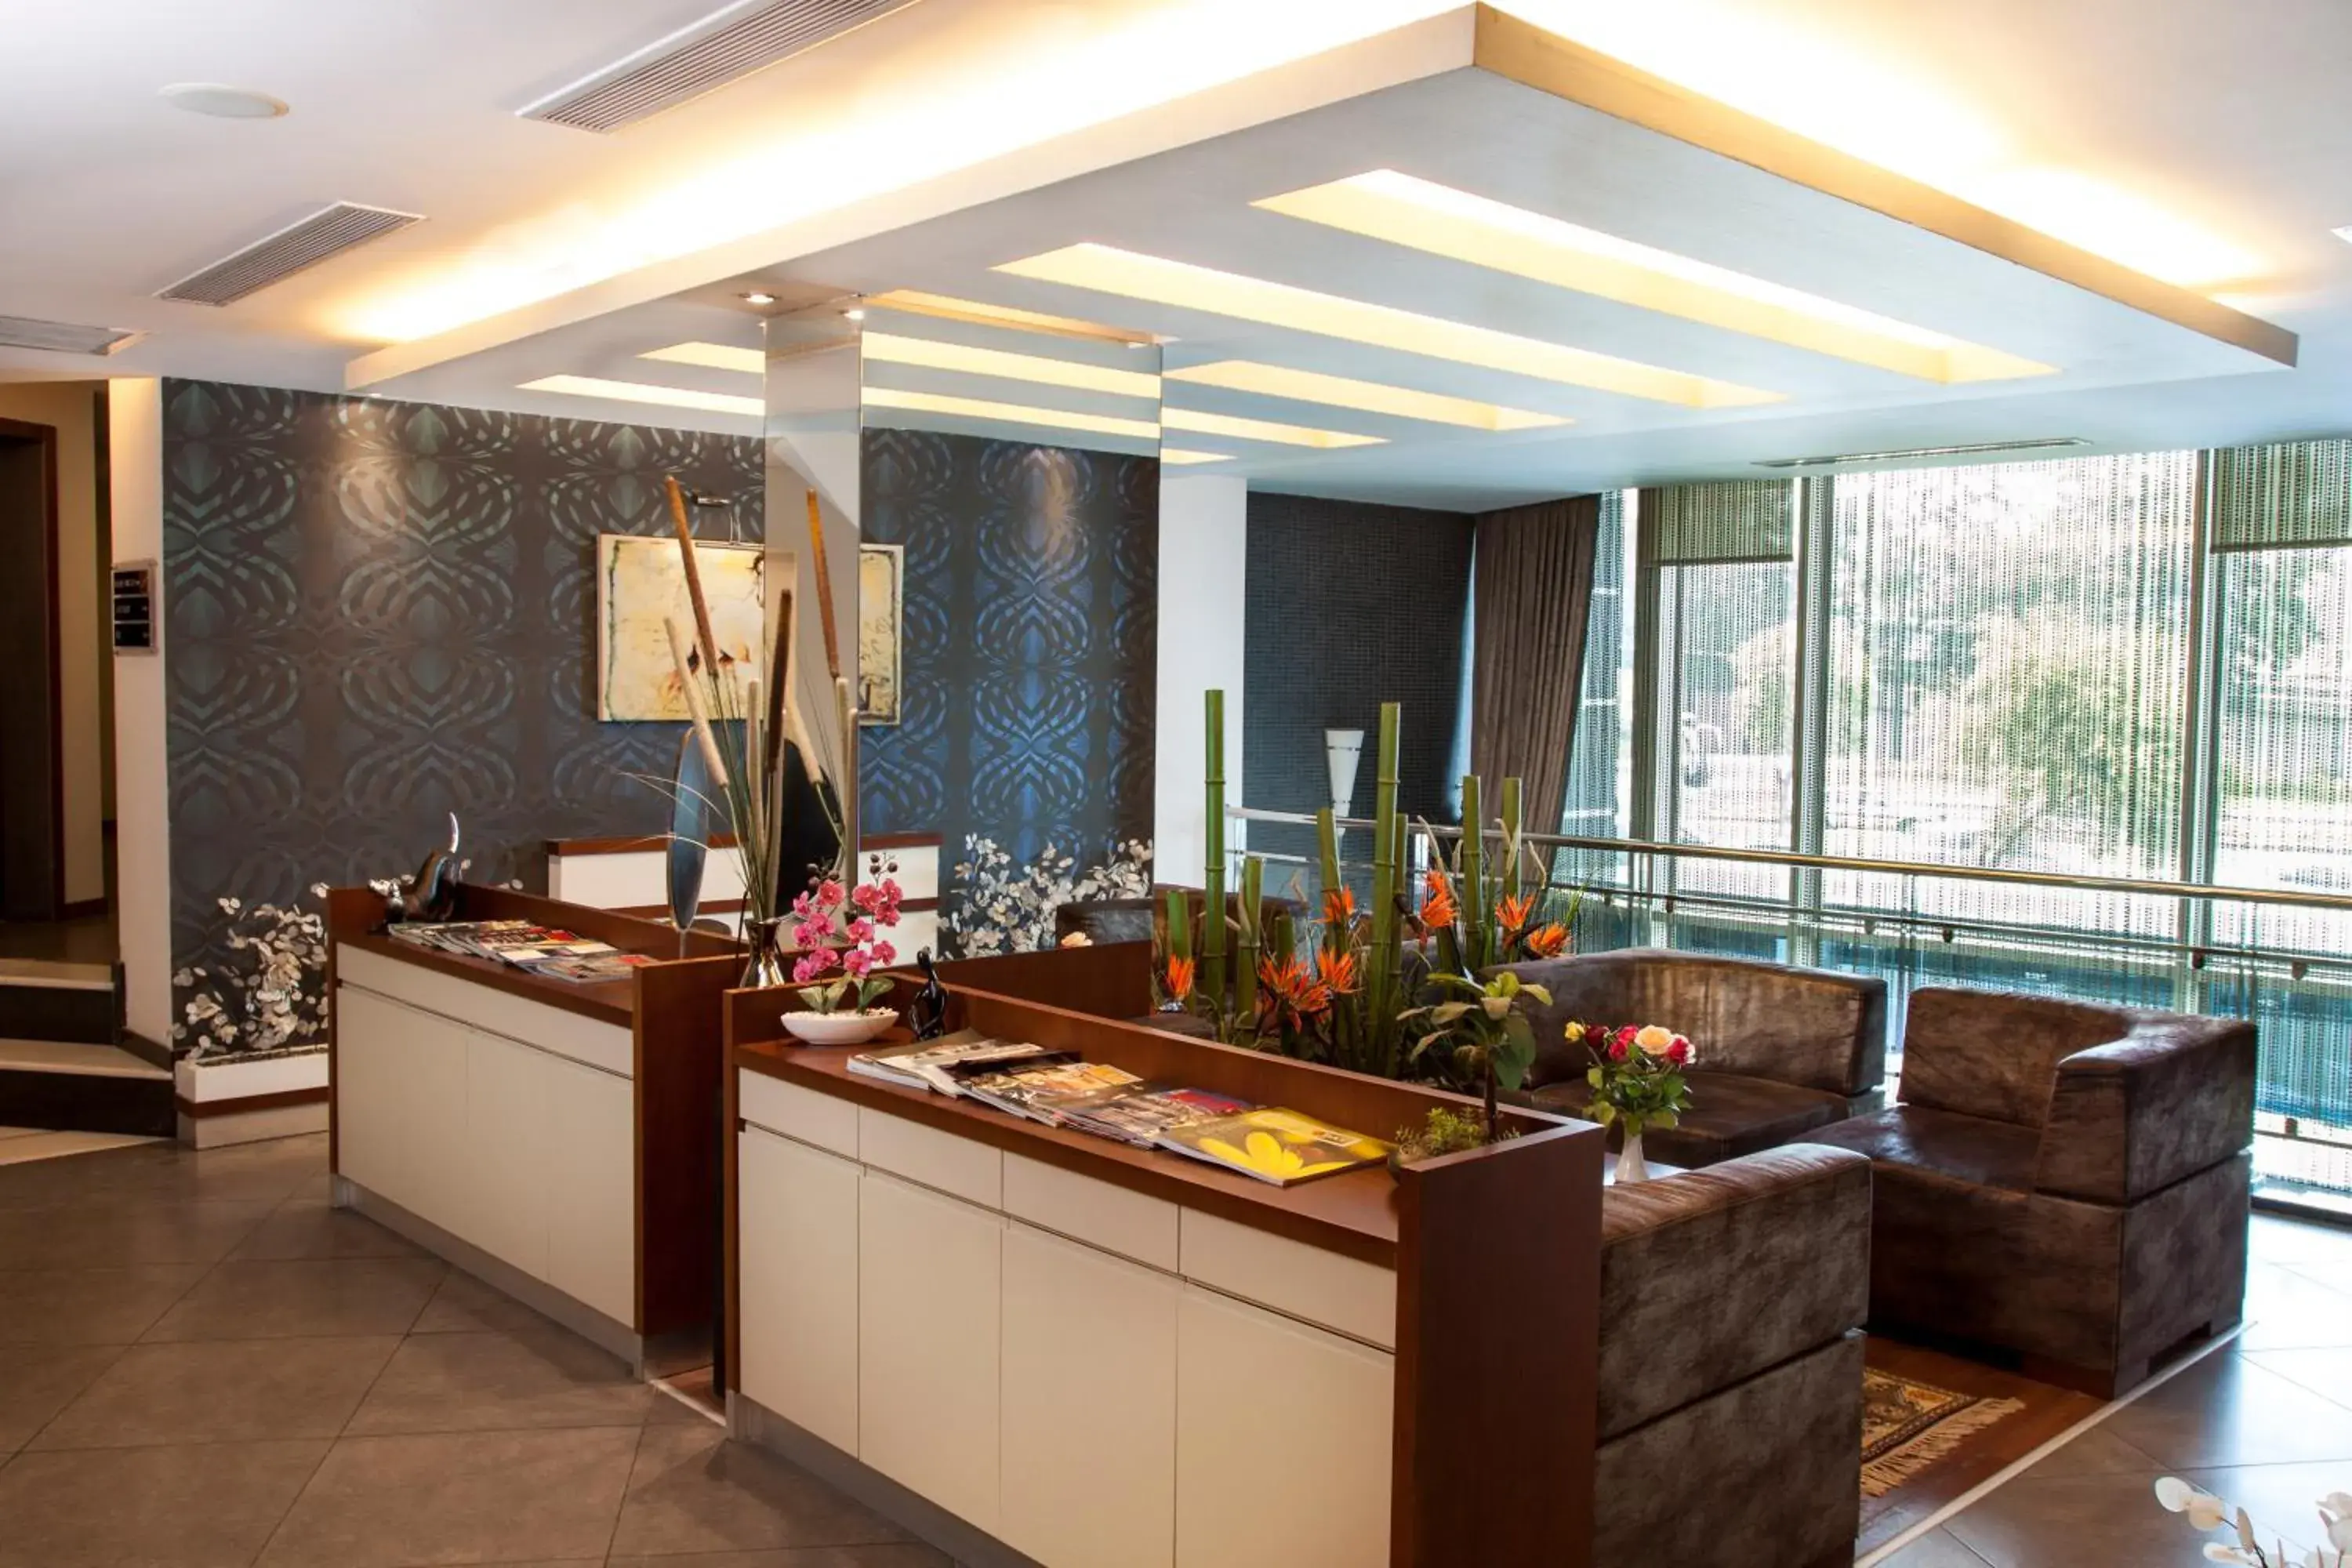 Lobby or reception in Blanca Hotel